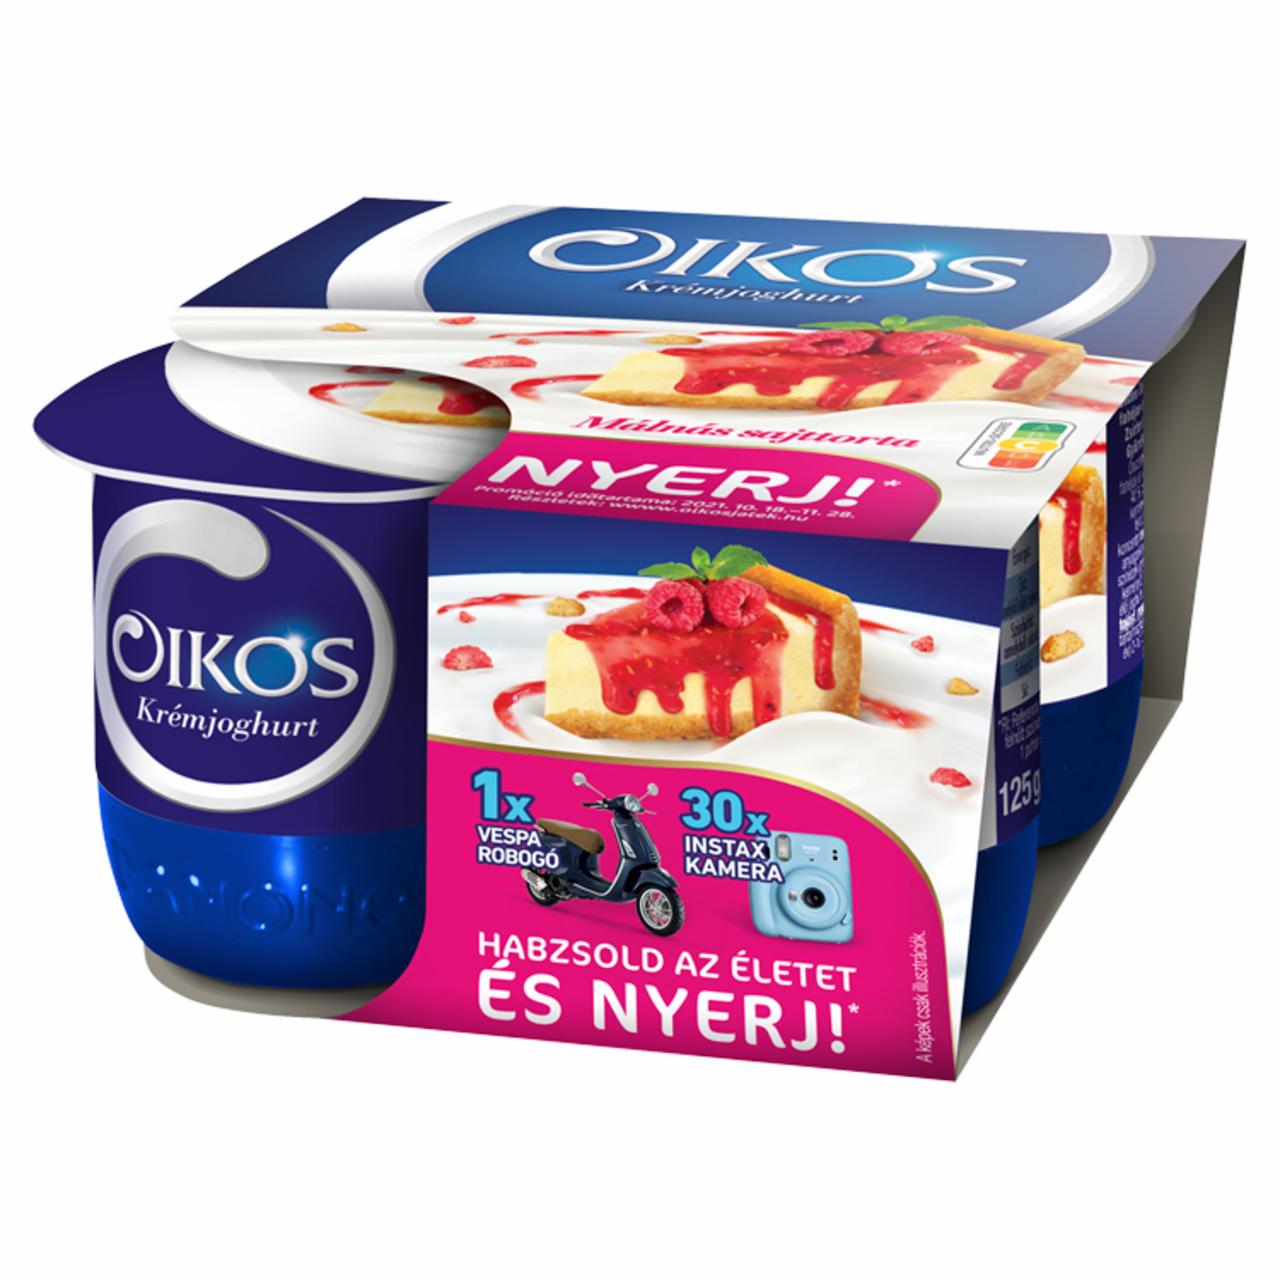 Képek - Danone Oikos málnás sajttorta ízű krémjoghurt 4 x 125 g